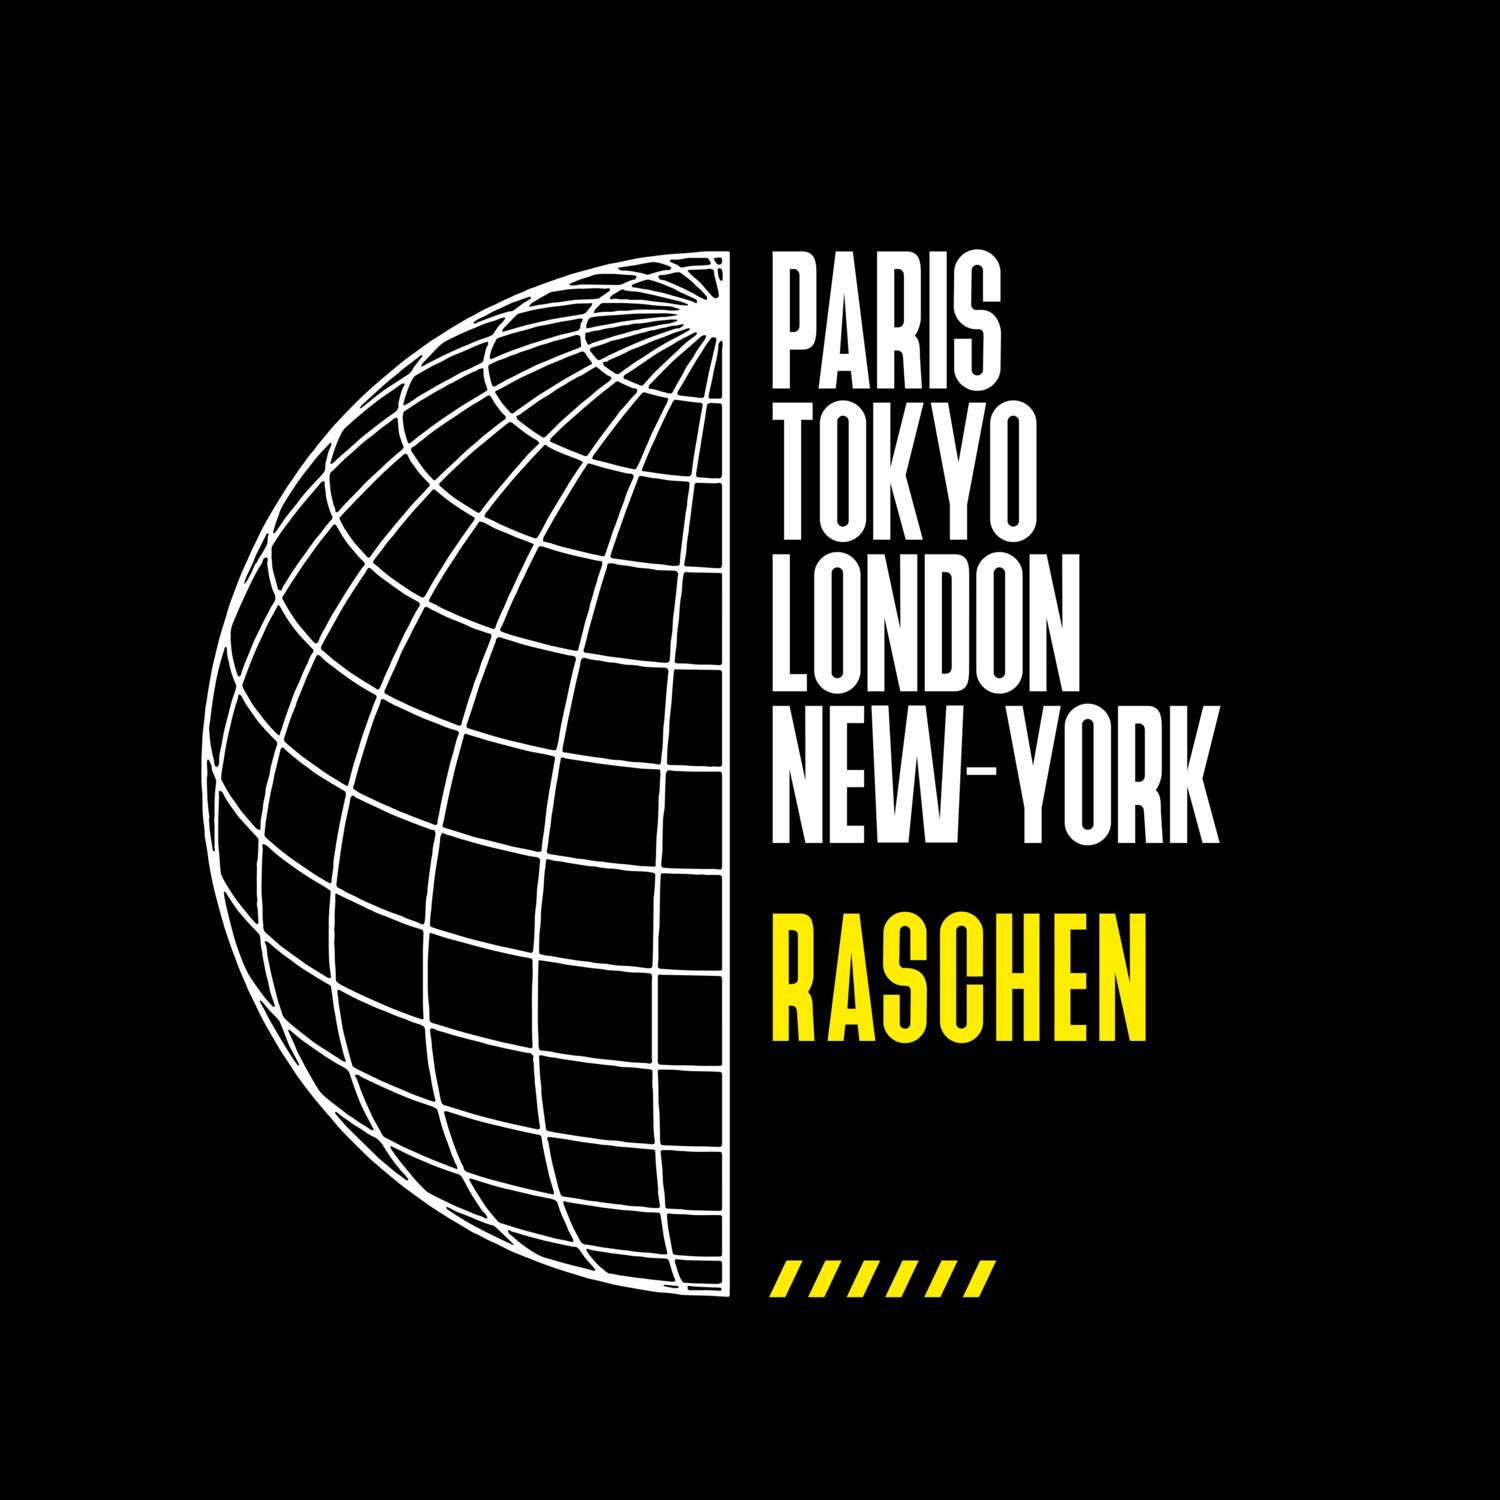 Raschen T-Shirt »Paris Tokyo London«